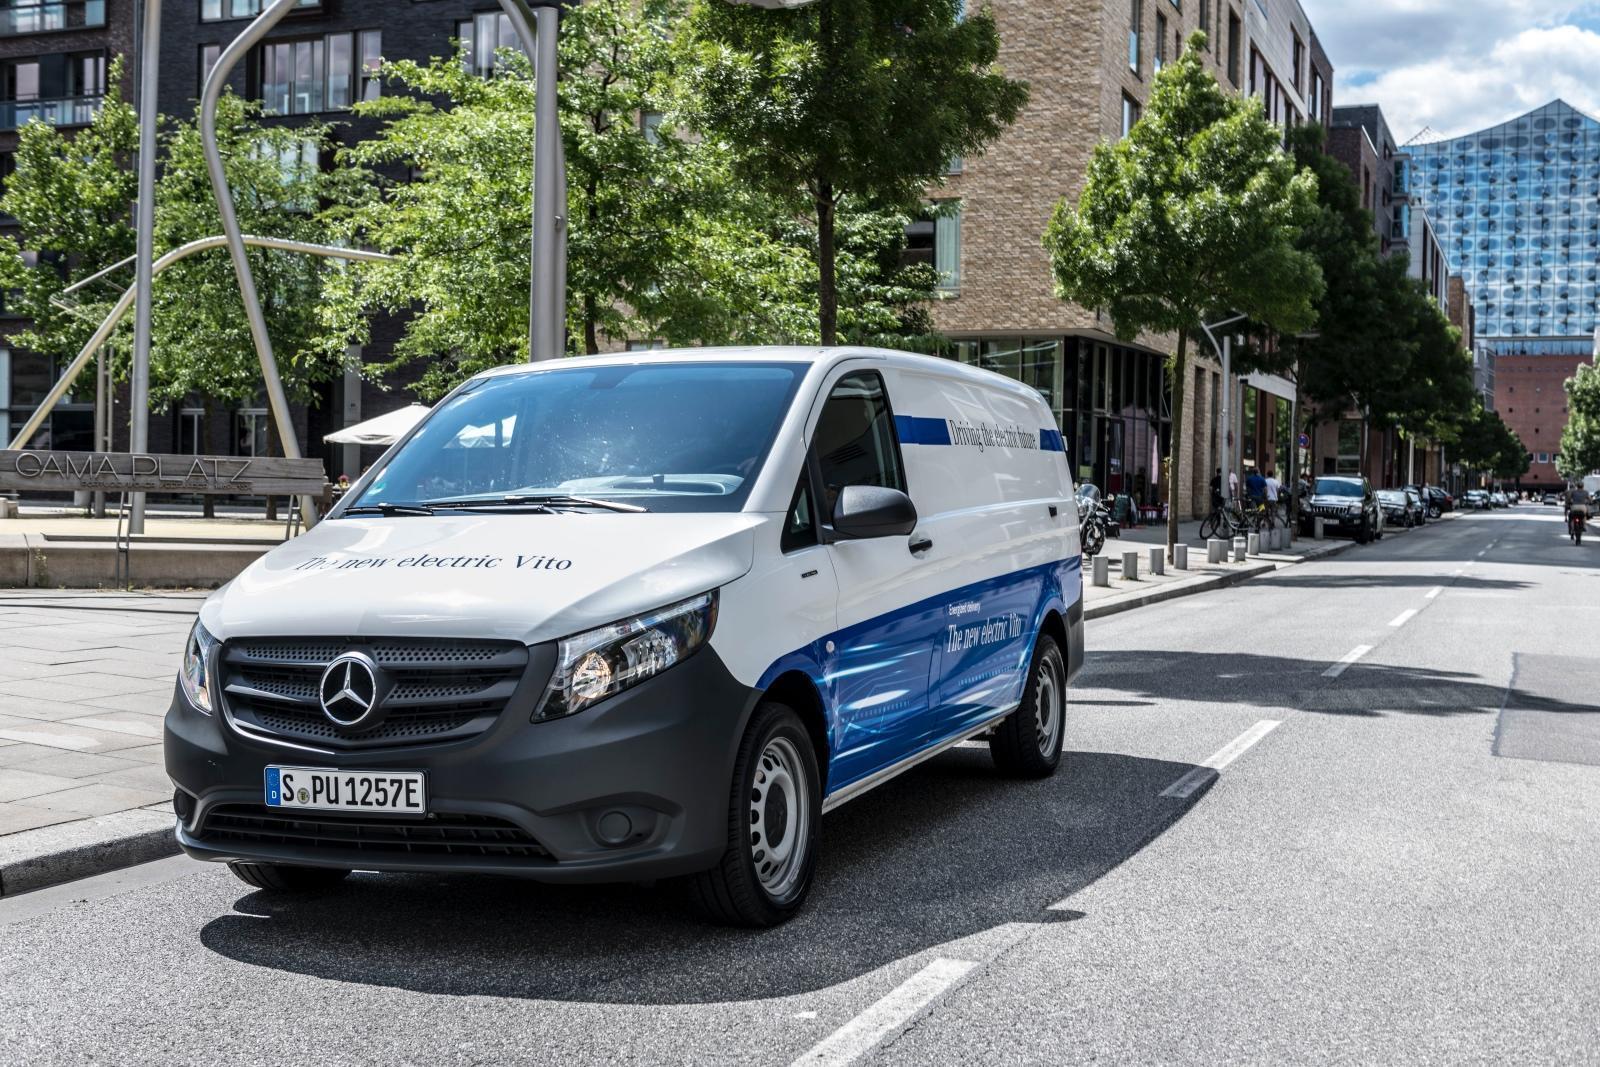 Lokal emissionsfreie Mobilität: Mercedes-Benz eVito fit für den urbanen Einsatz // Local zero-emissions mobility: Mercedes Benz eVito fit for urban life